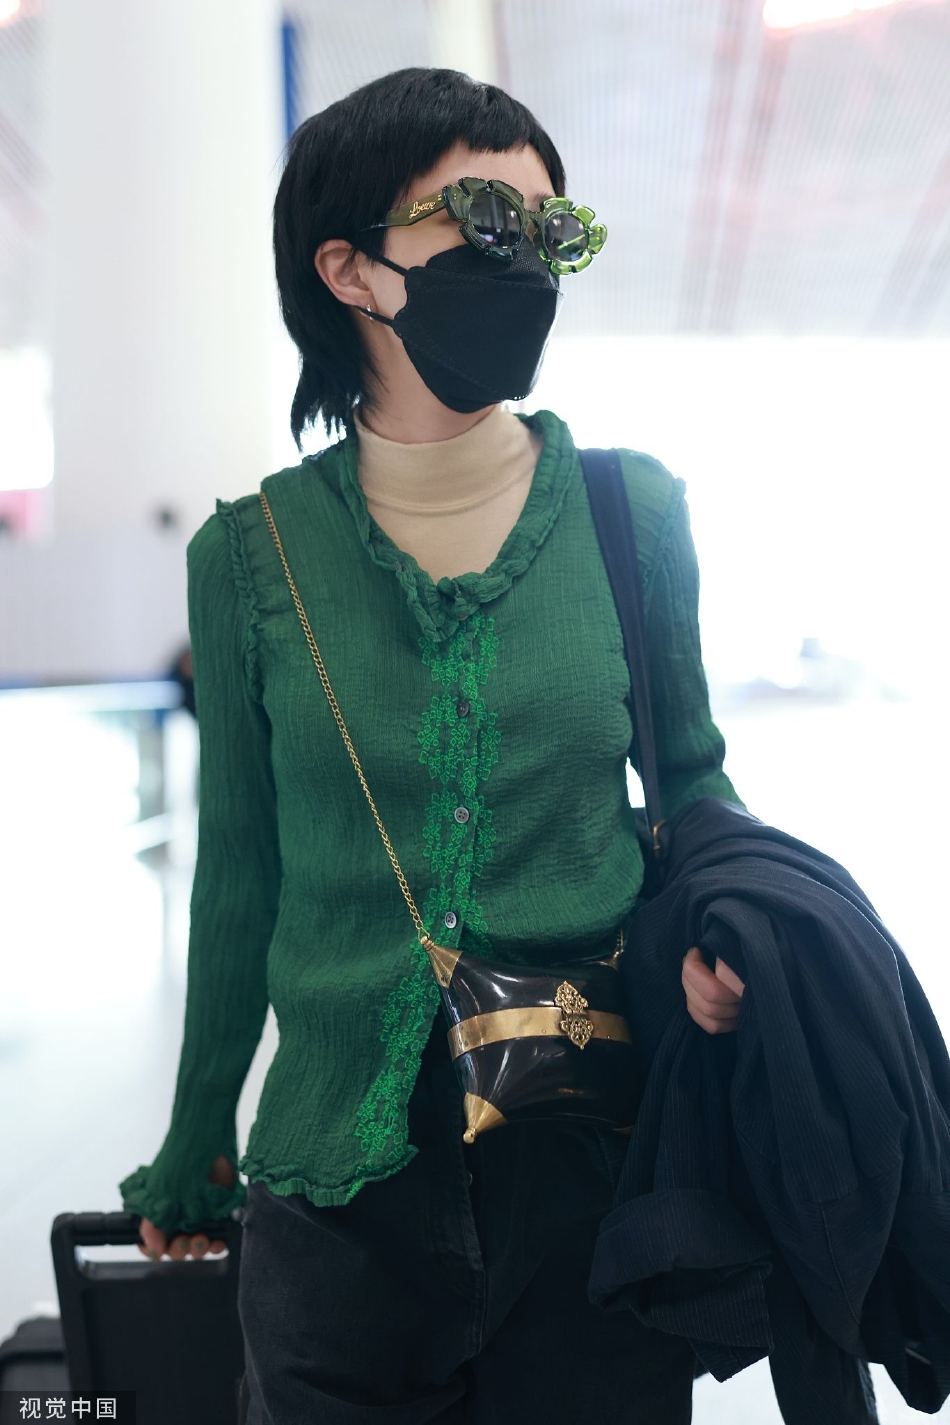 组图:郭采洁穿搭时尚现身机场 穿绿色上衣配绿框墨镜潮流范十足